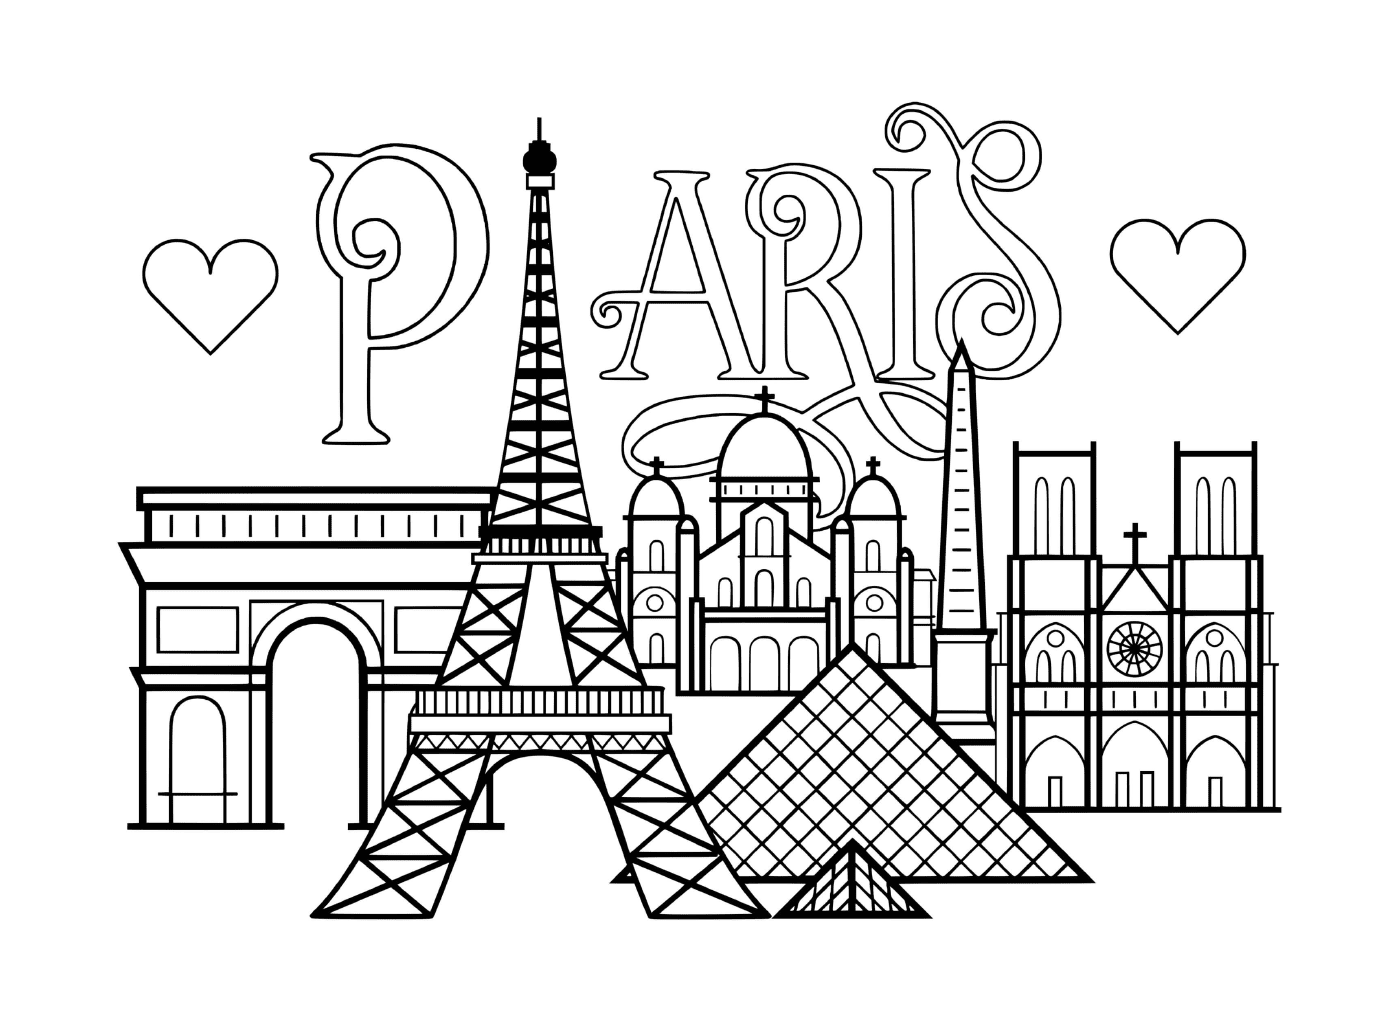  Cidade de Paris, monumentos famosos 